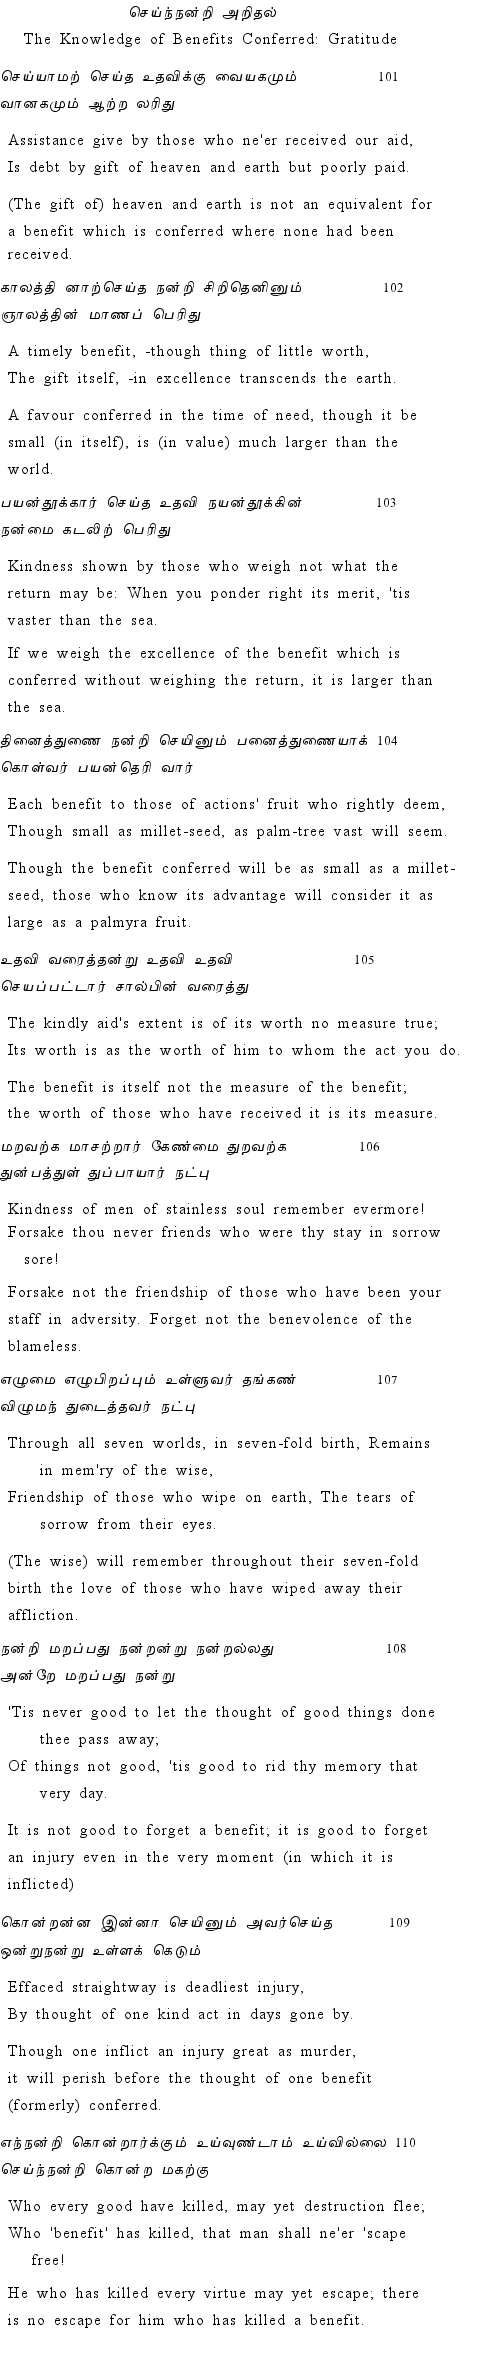 Text of Adhikaram 11